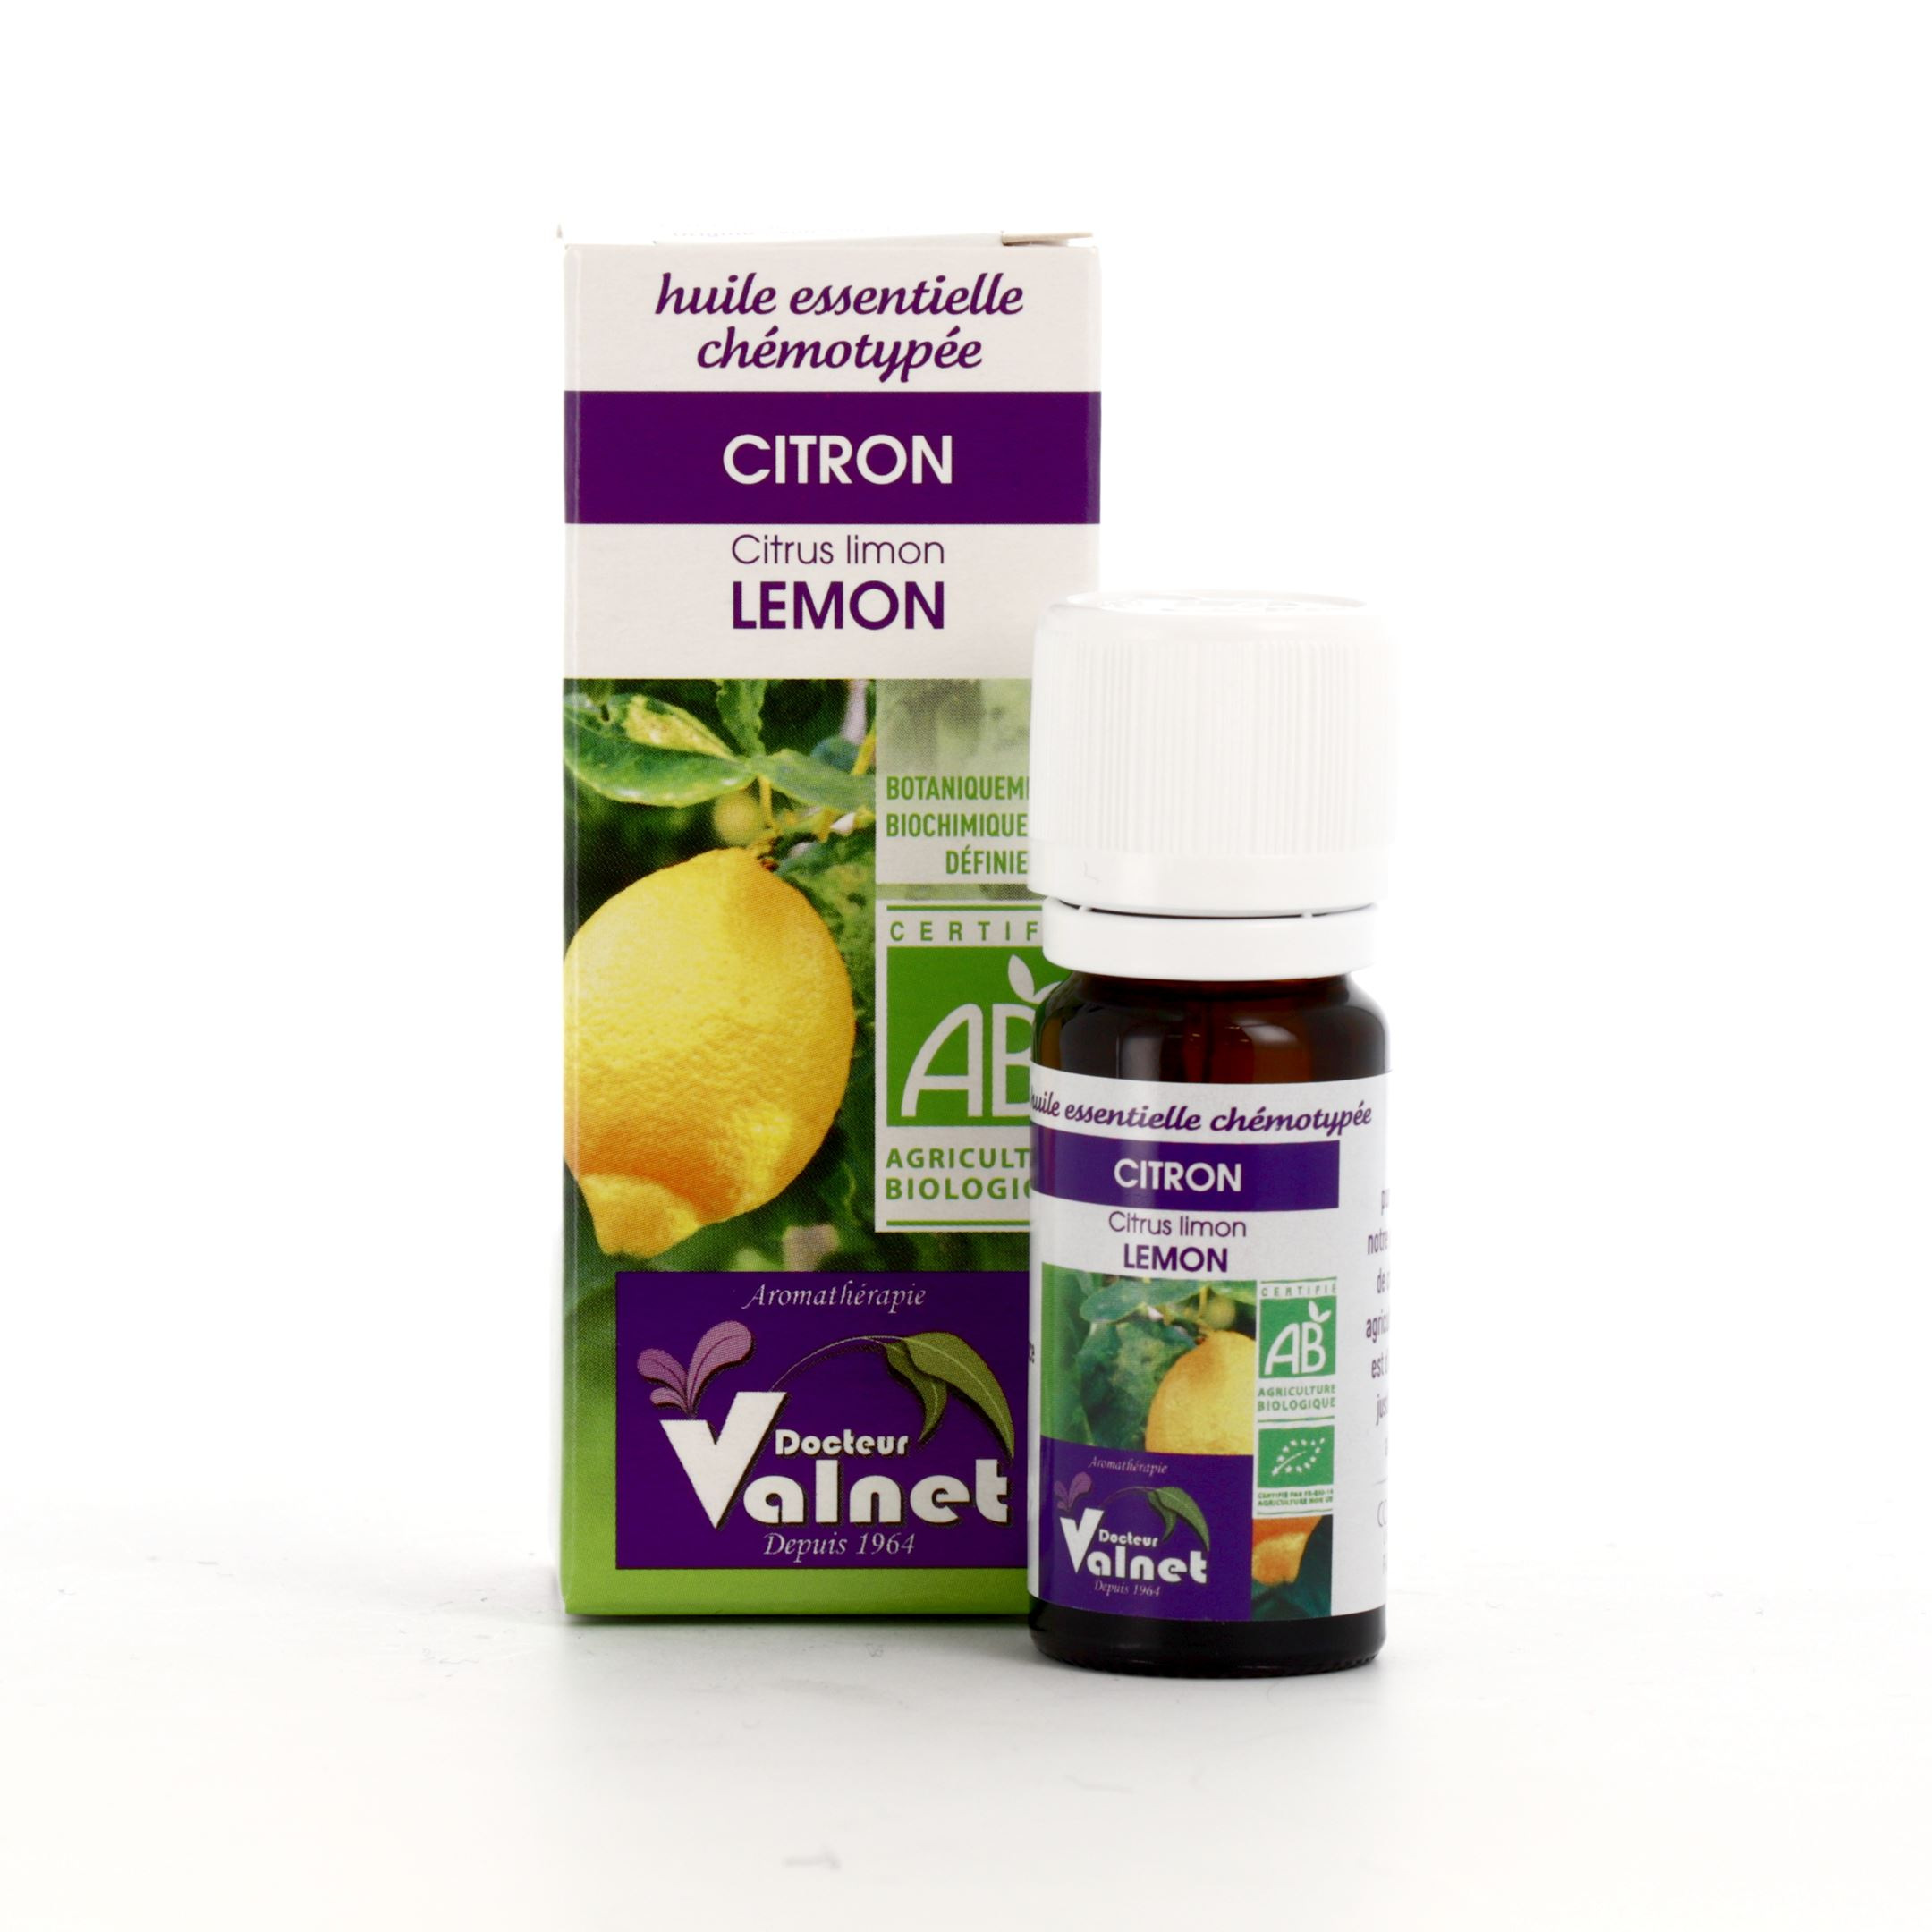 Huile essentielle de Citron Docteur Valnet